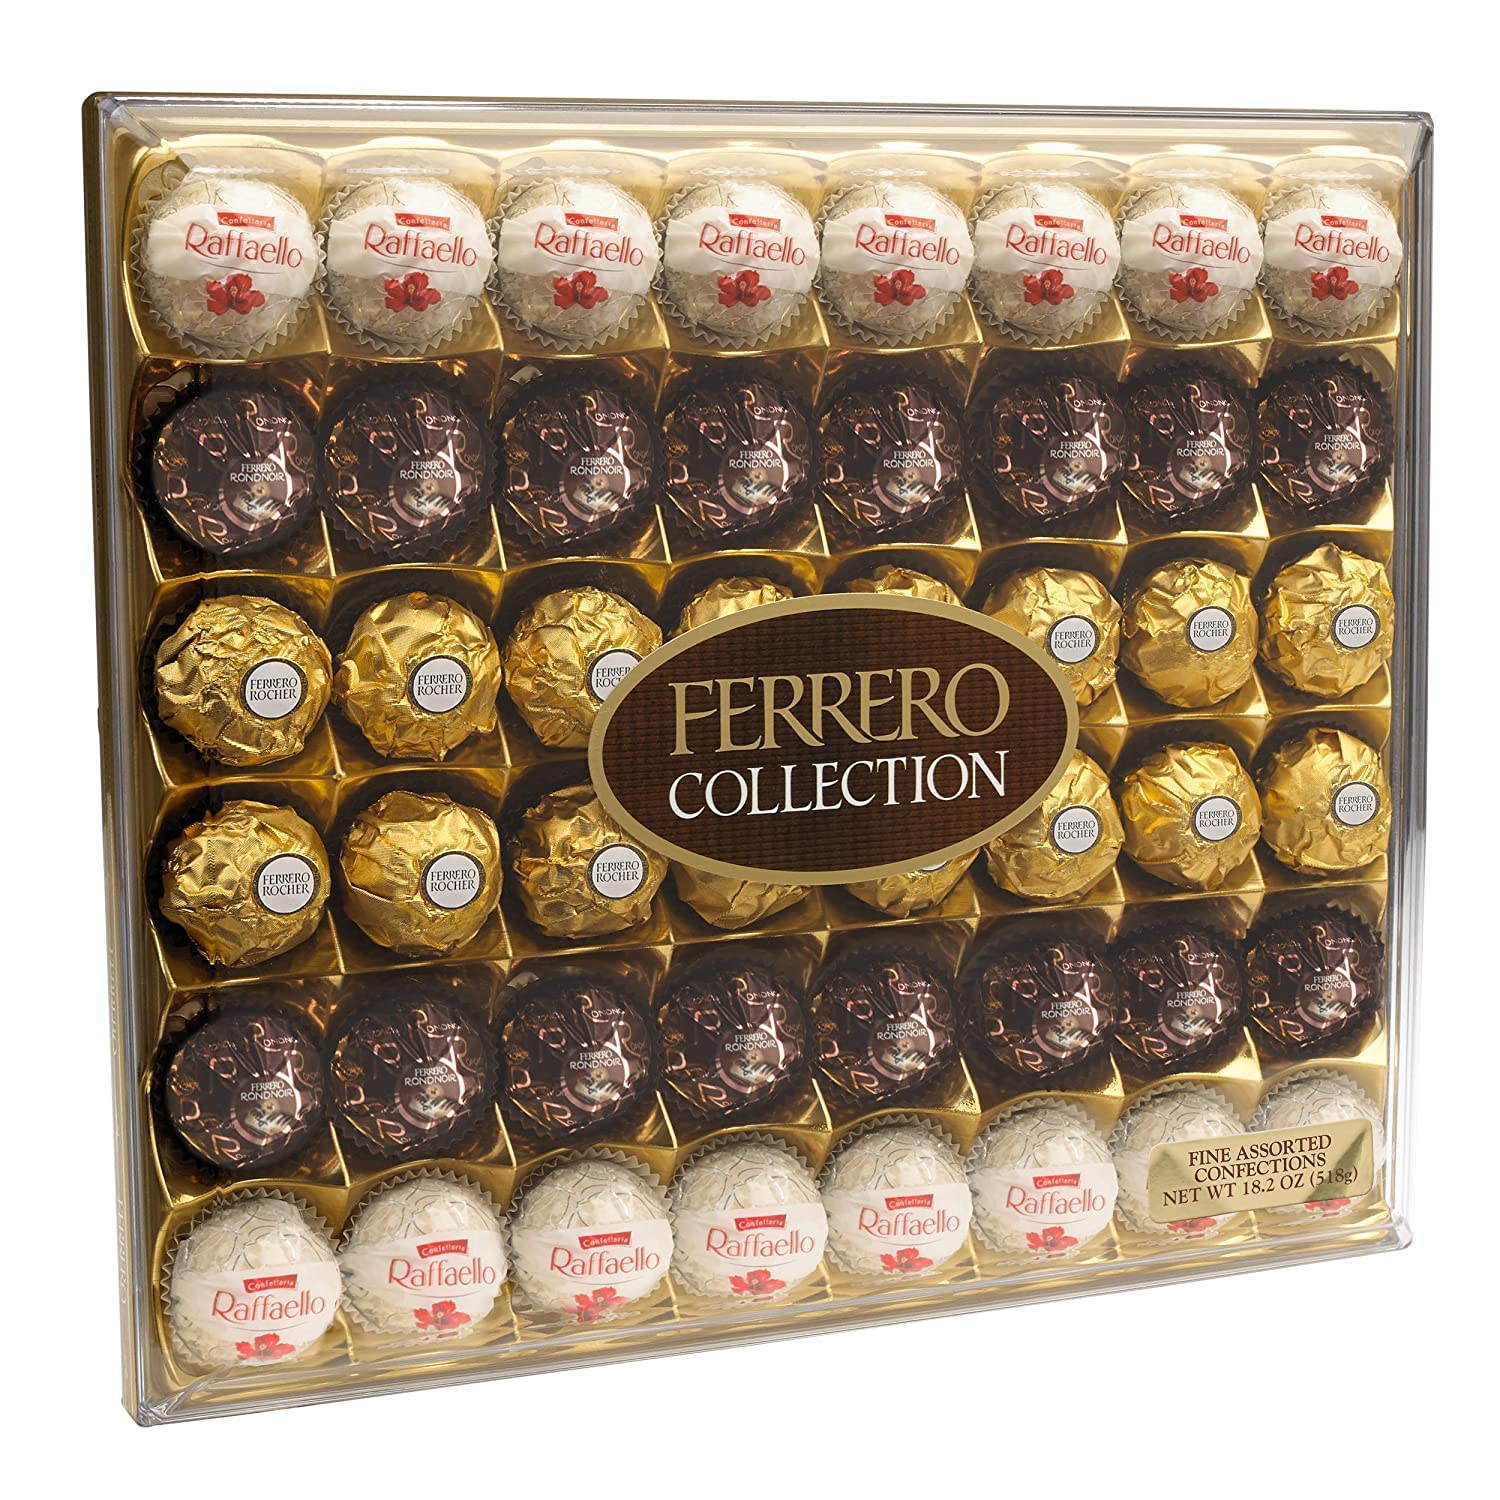 Ferrero: Assorted chocolates - ferrero rocher, ferrero garden coco, ferrero  rondnoir (close up)